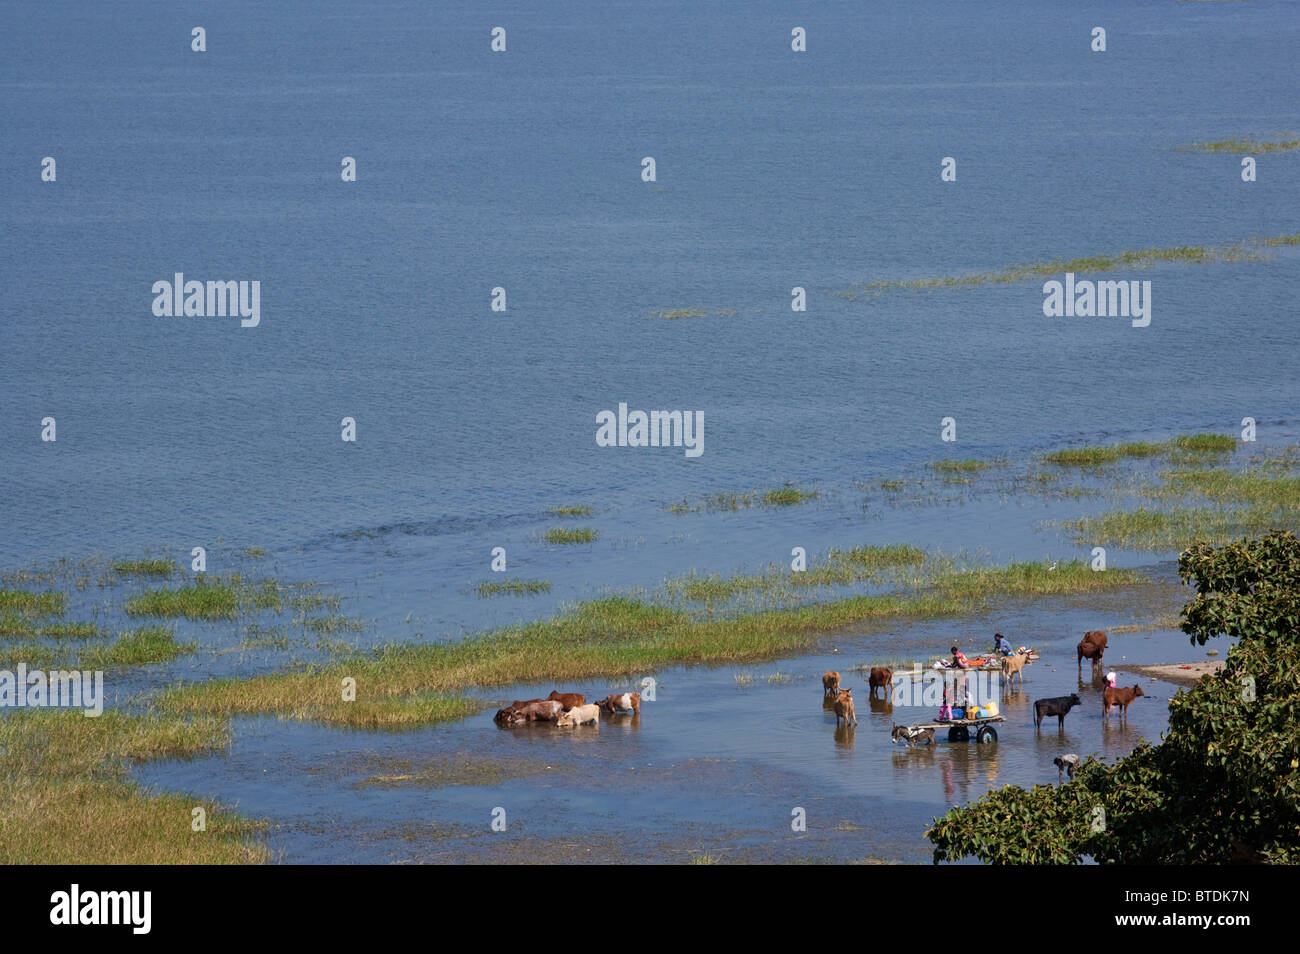 Los lugareños regando el ganado en los bajíos del lago Awassa Foto de stock